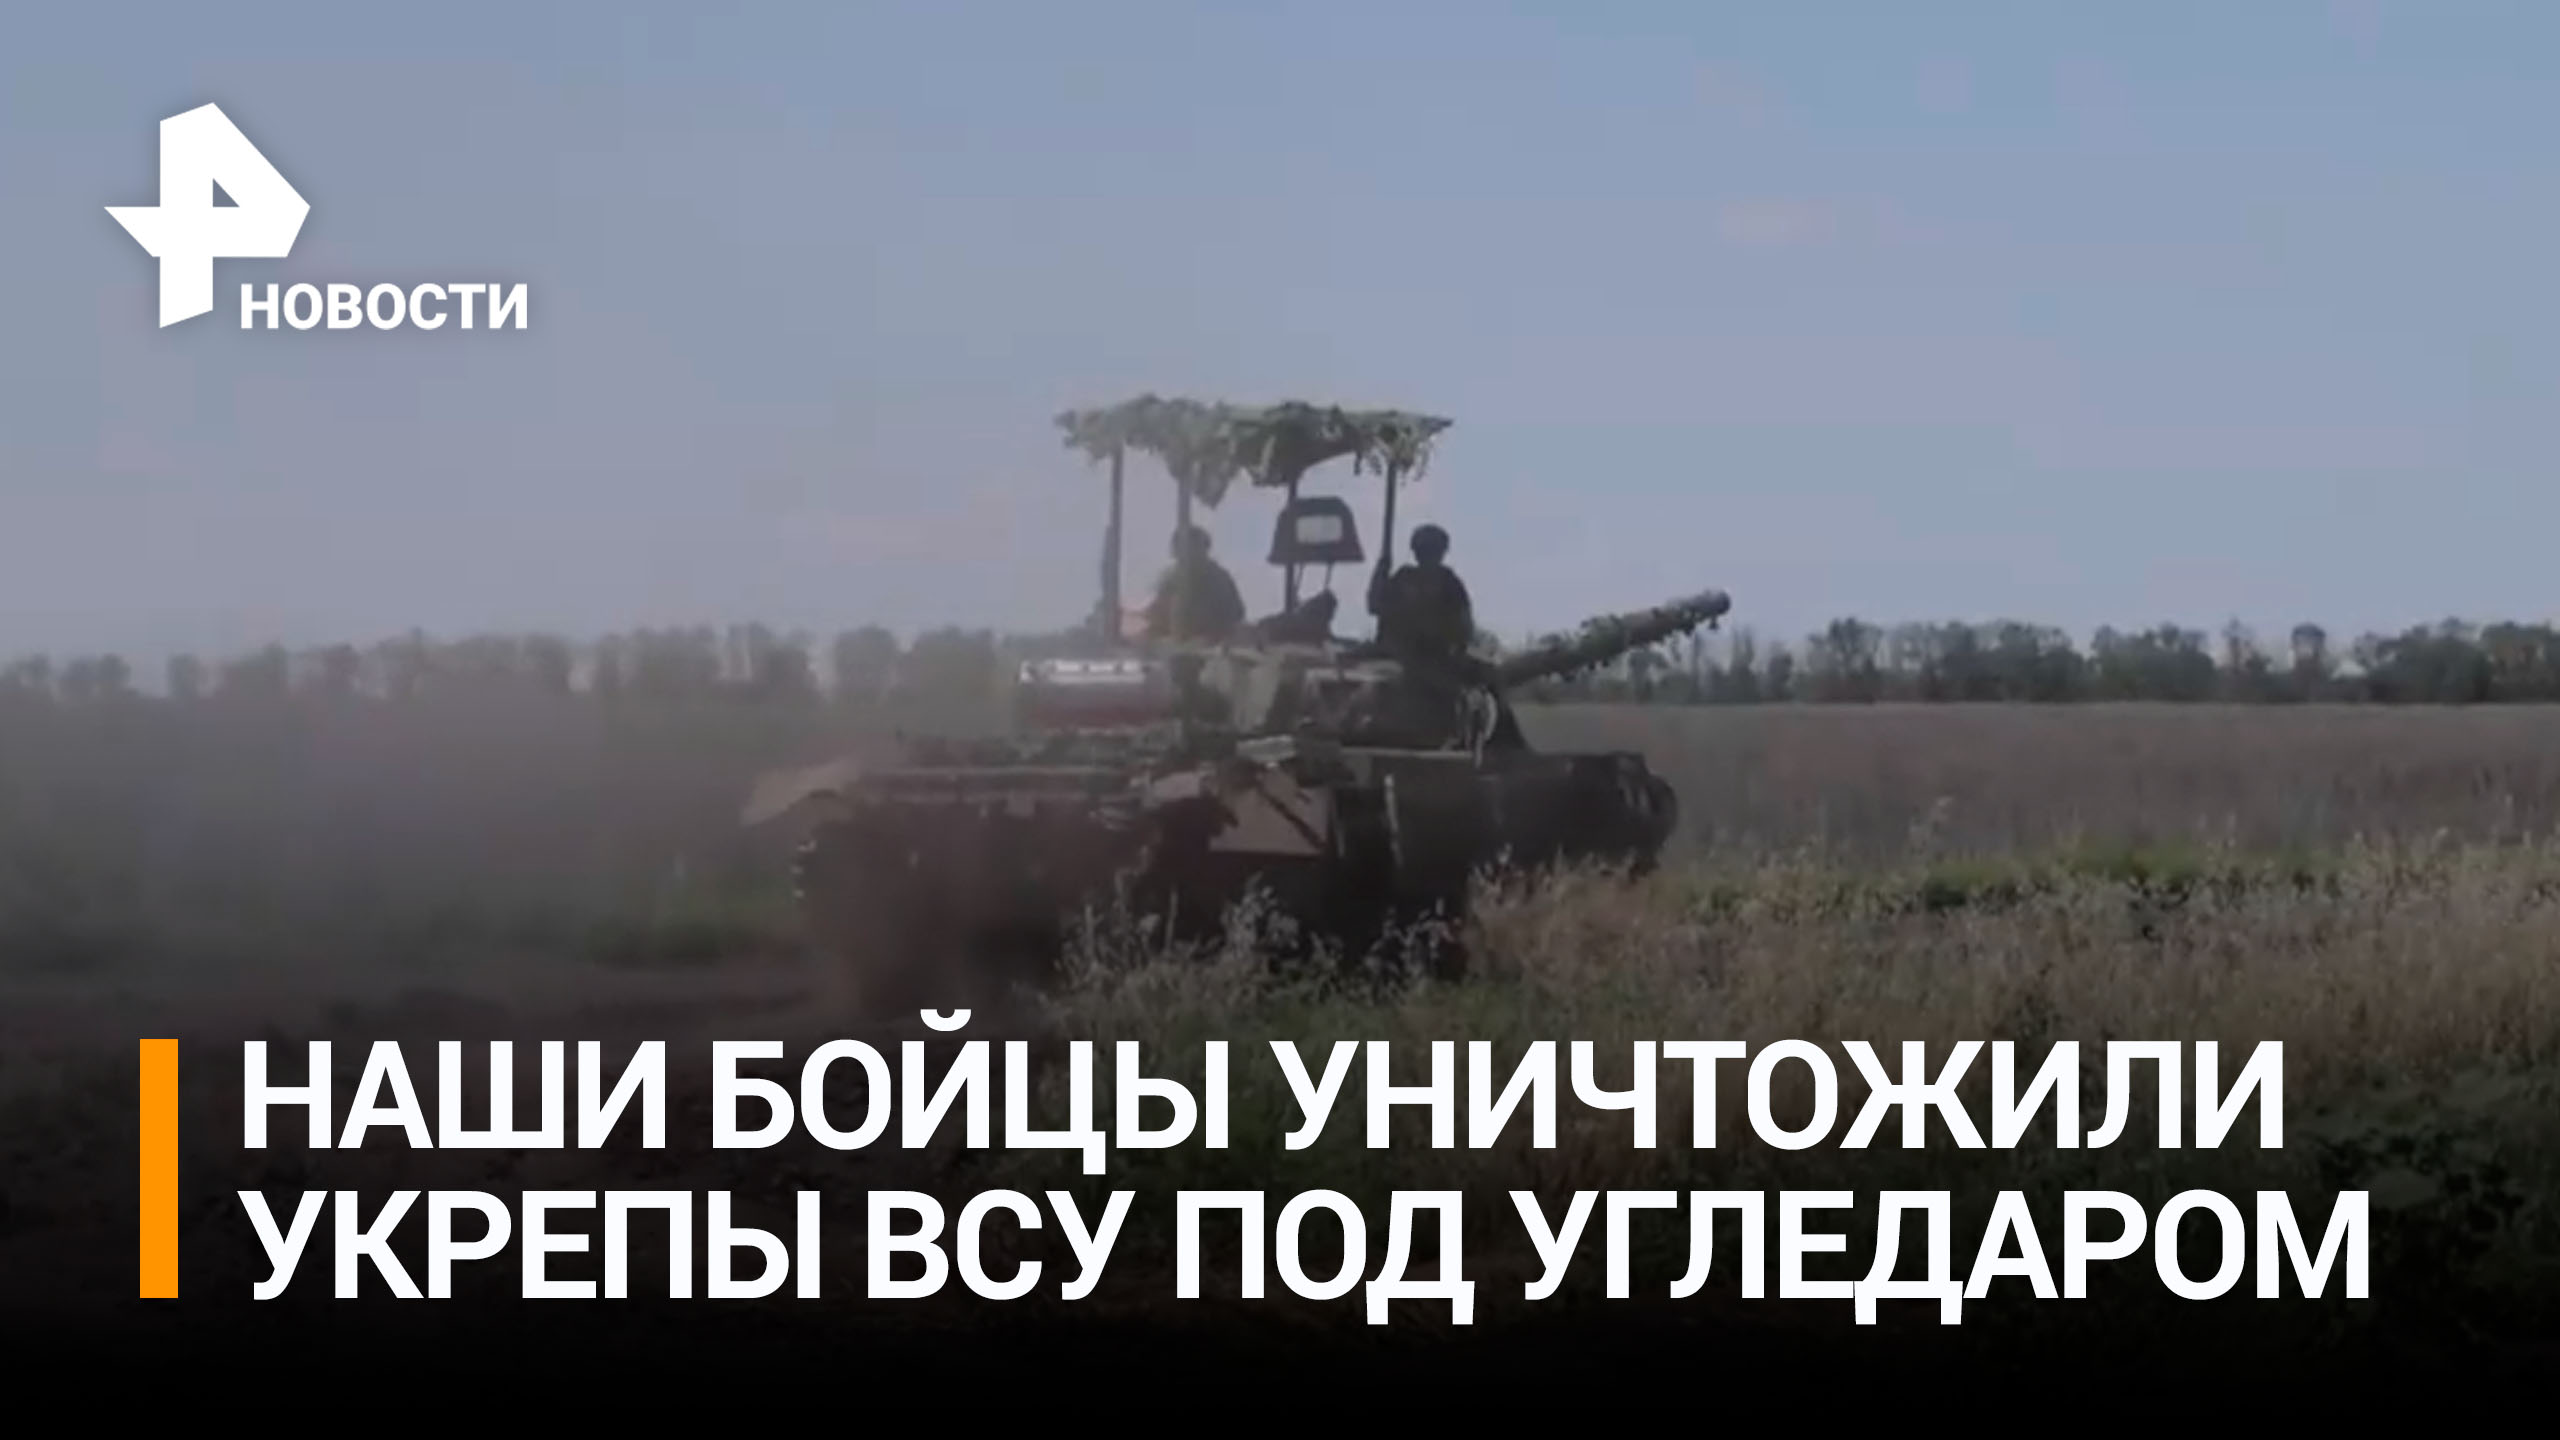 Российские танкисты уничтожили укрепрайоны ВСУ под Угледаром / РЕН Новости